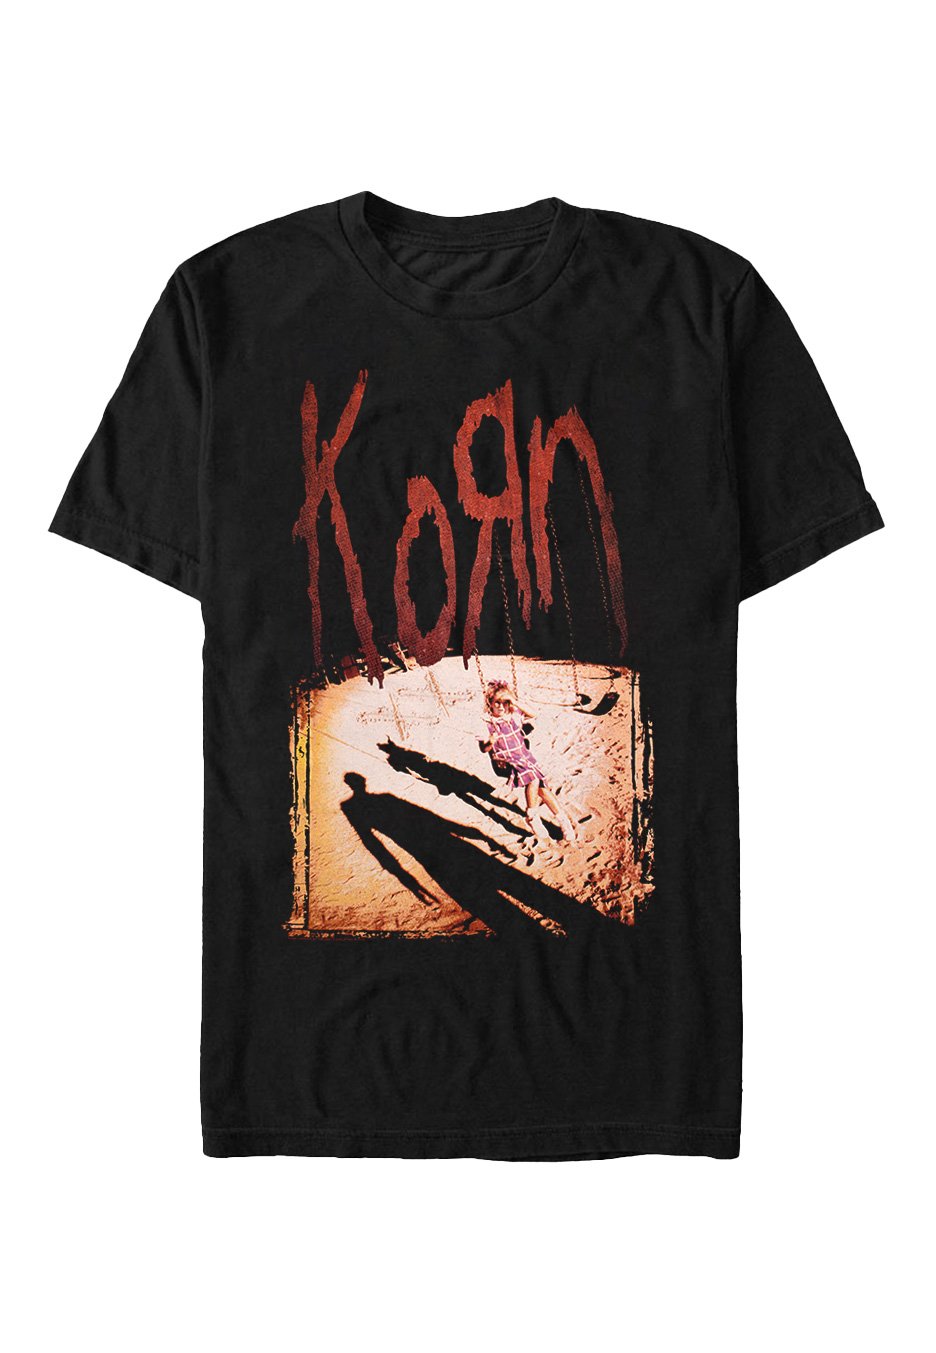 Korn - Korn - T-Shirt